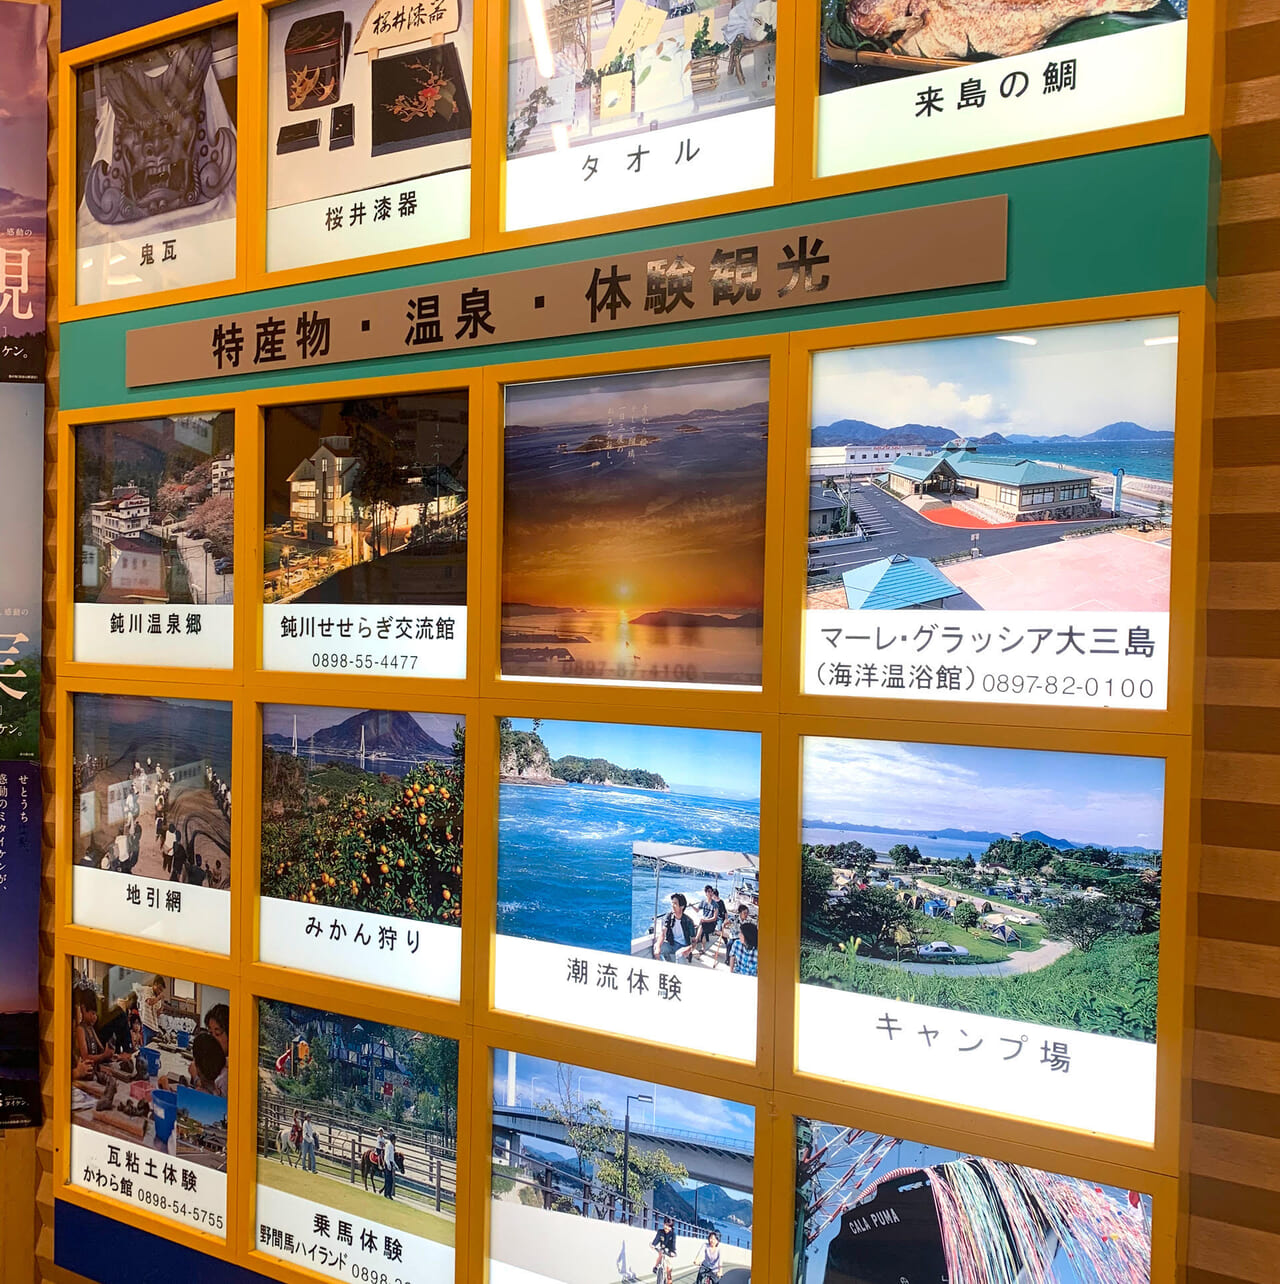 「道の駅今治 湯ノ浦温泉」は休憩にもお土産の購入にもおすすめのスポットです!!